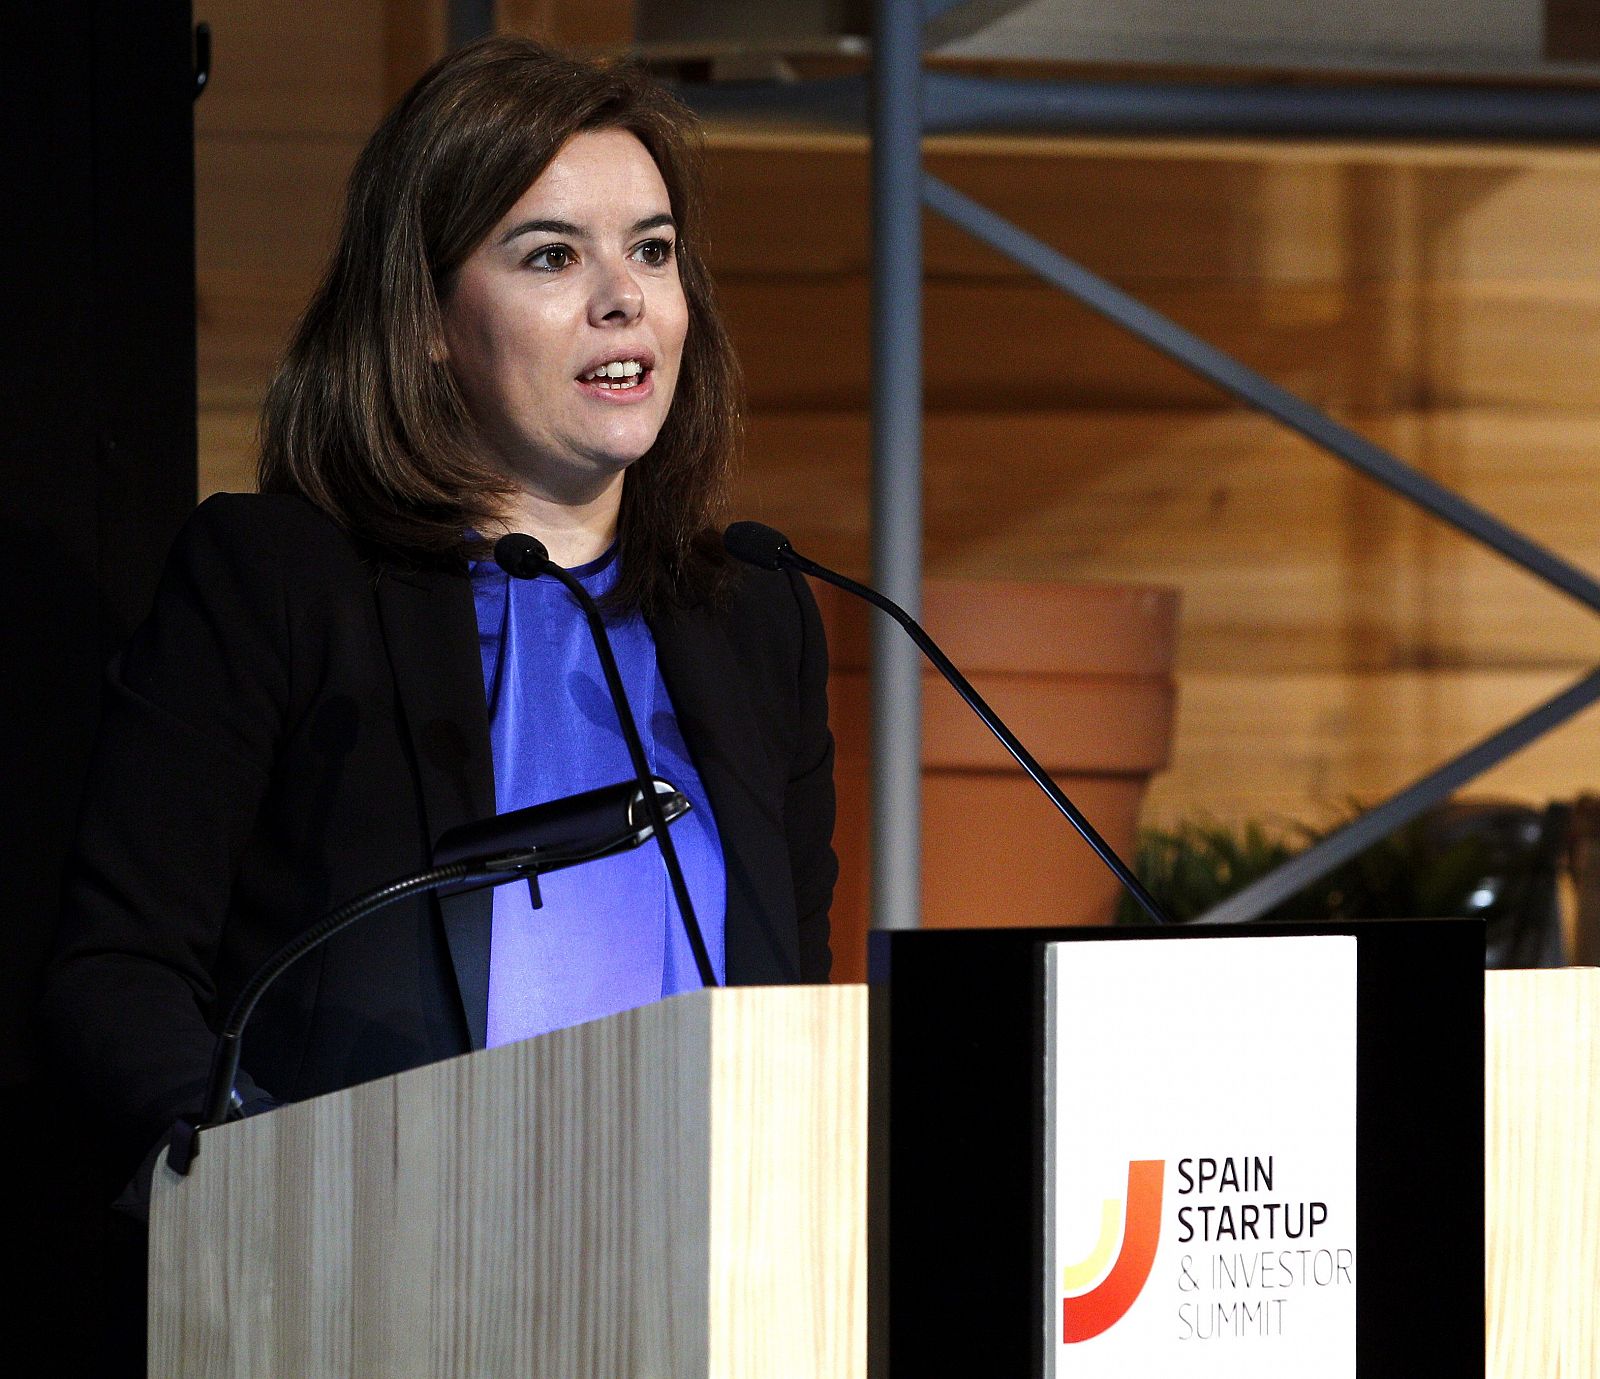 La vicepresidenta, Soraya Sáenz de Santamaría, interviene en el foro Spain StartUp 2013